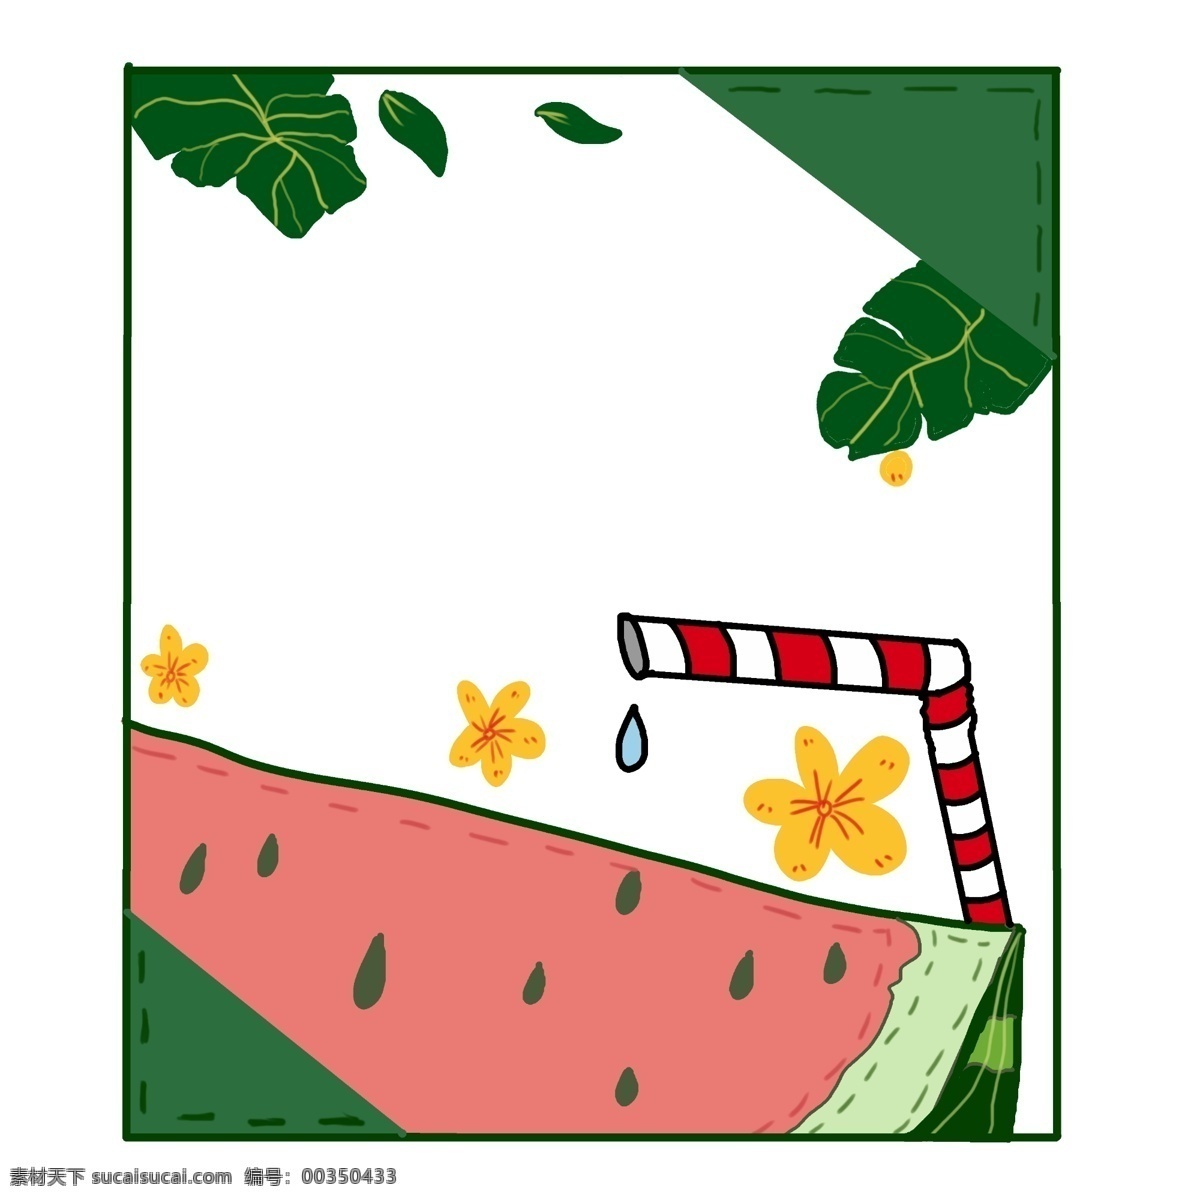 夏季 西瓜 边框 手绘 叶子 粉色 绿色 中国风 小清新 植物 水果 免扣边框 绿色边框